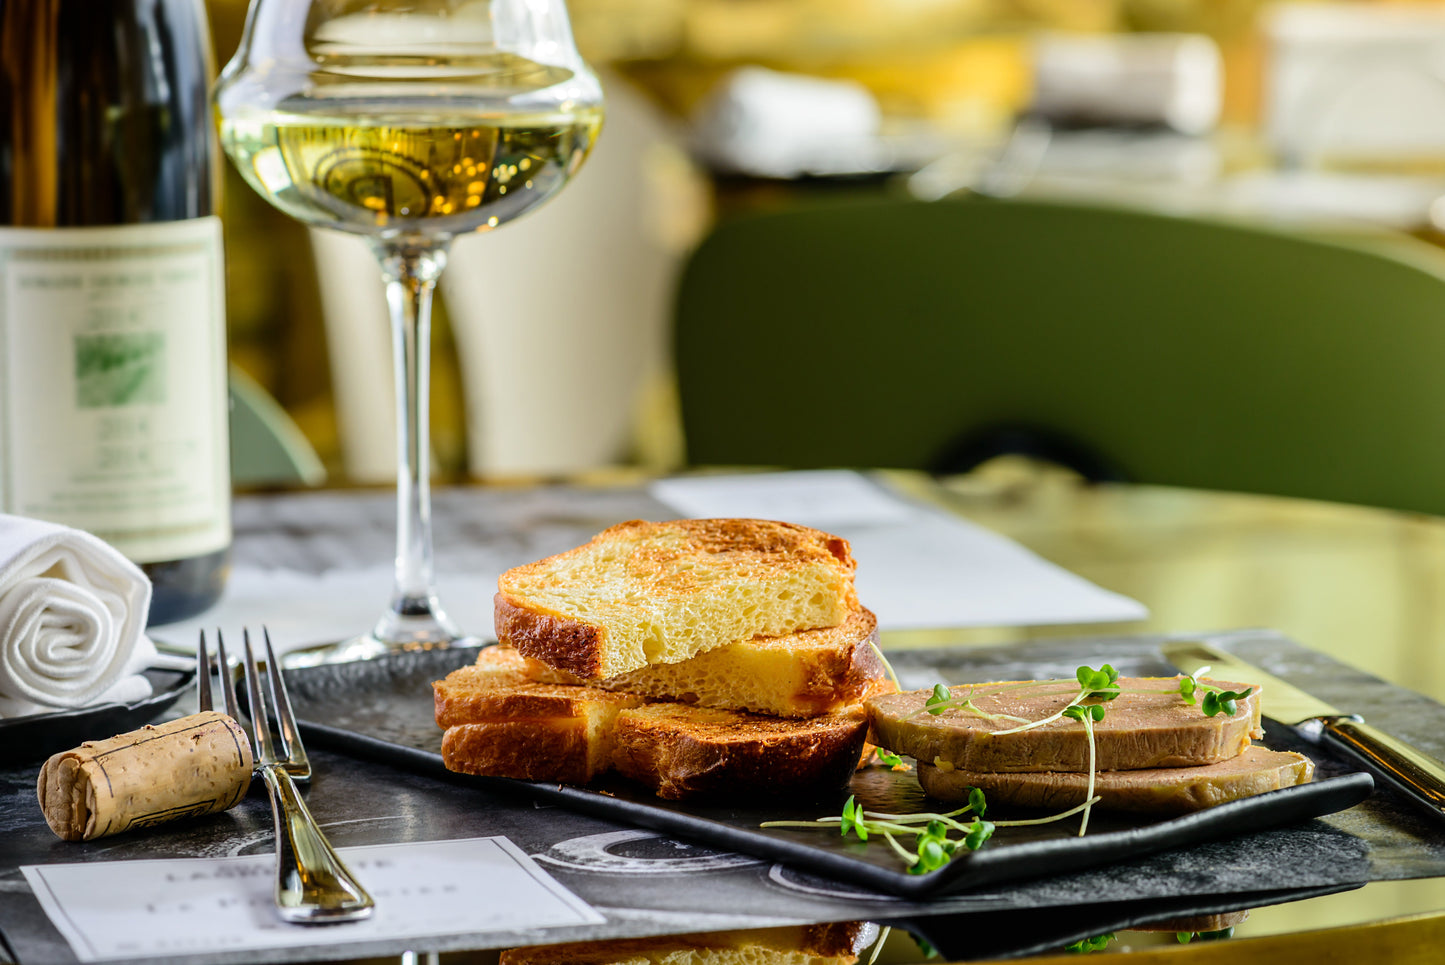 Bloc de foie gras truffé à la truffe du Périgord 3%. Foie gras de canard IGP France Sud-Ouest. 200g